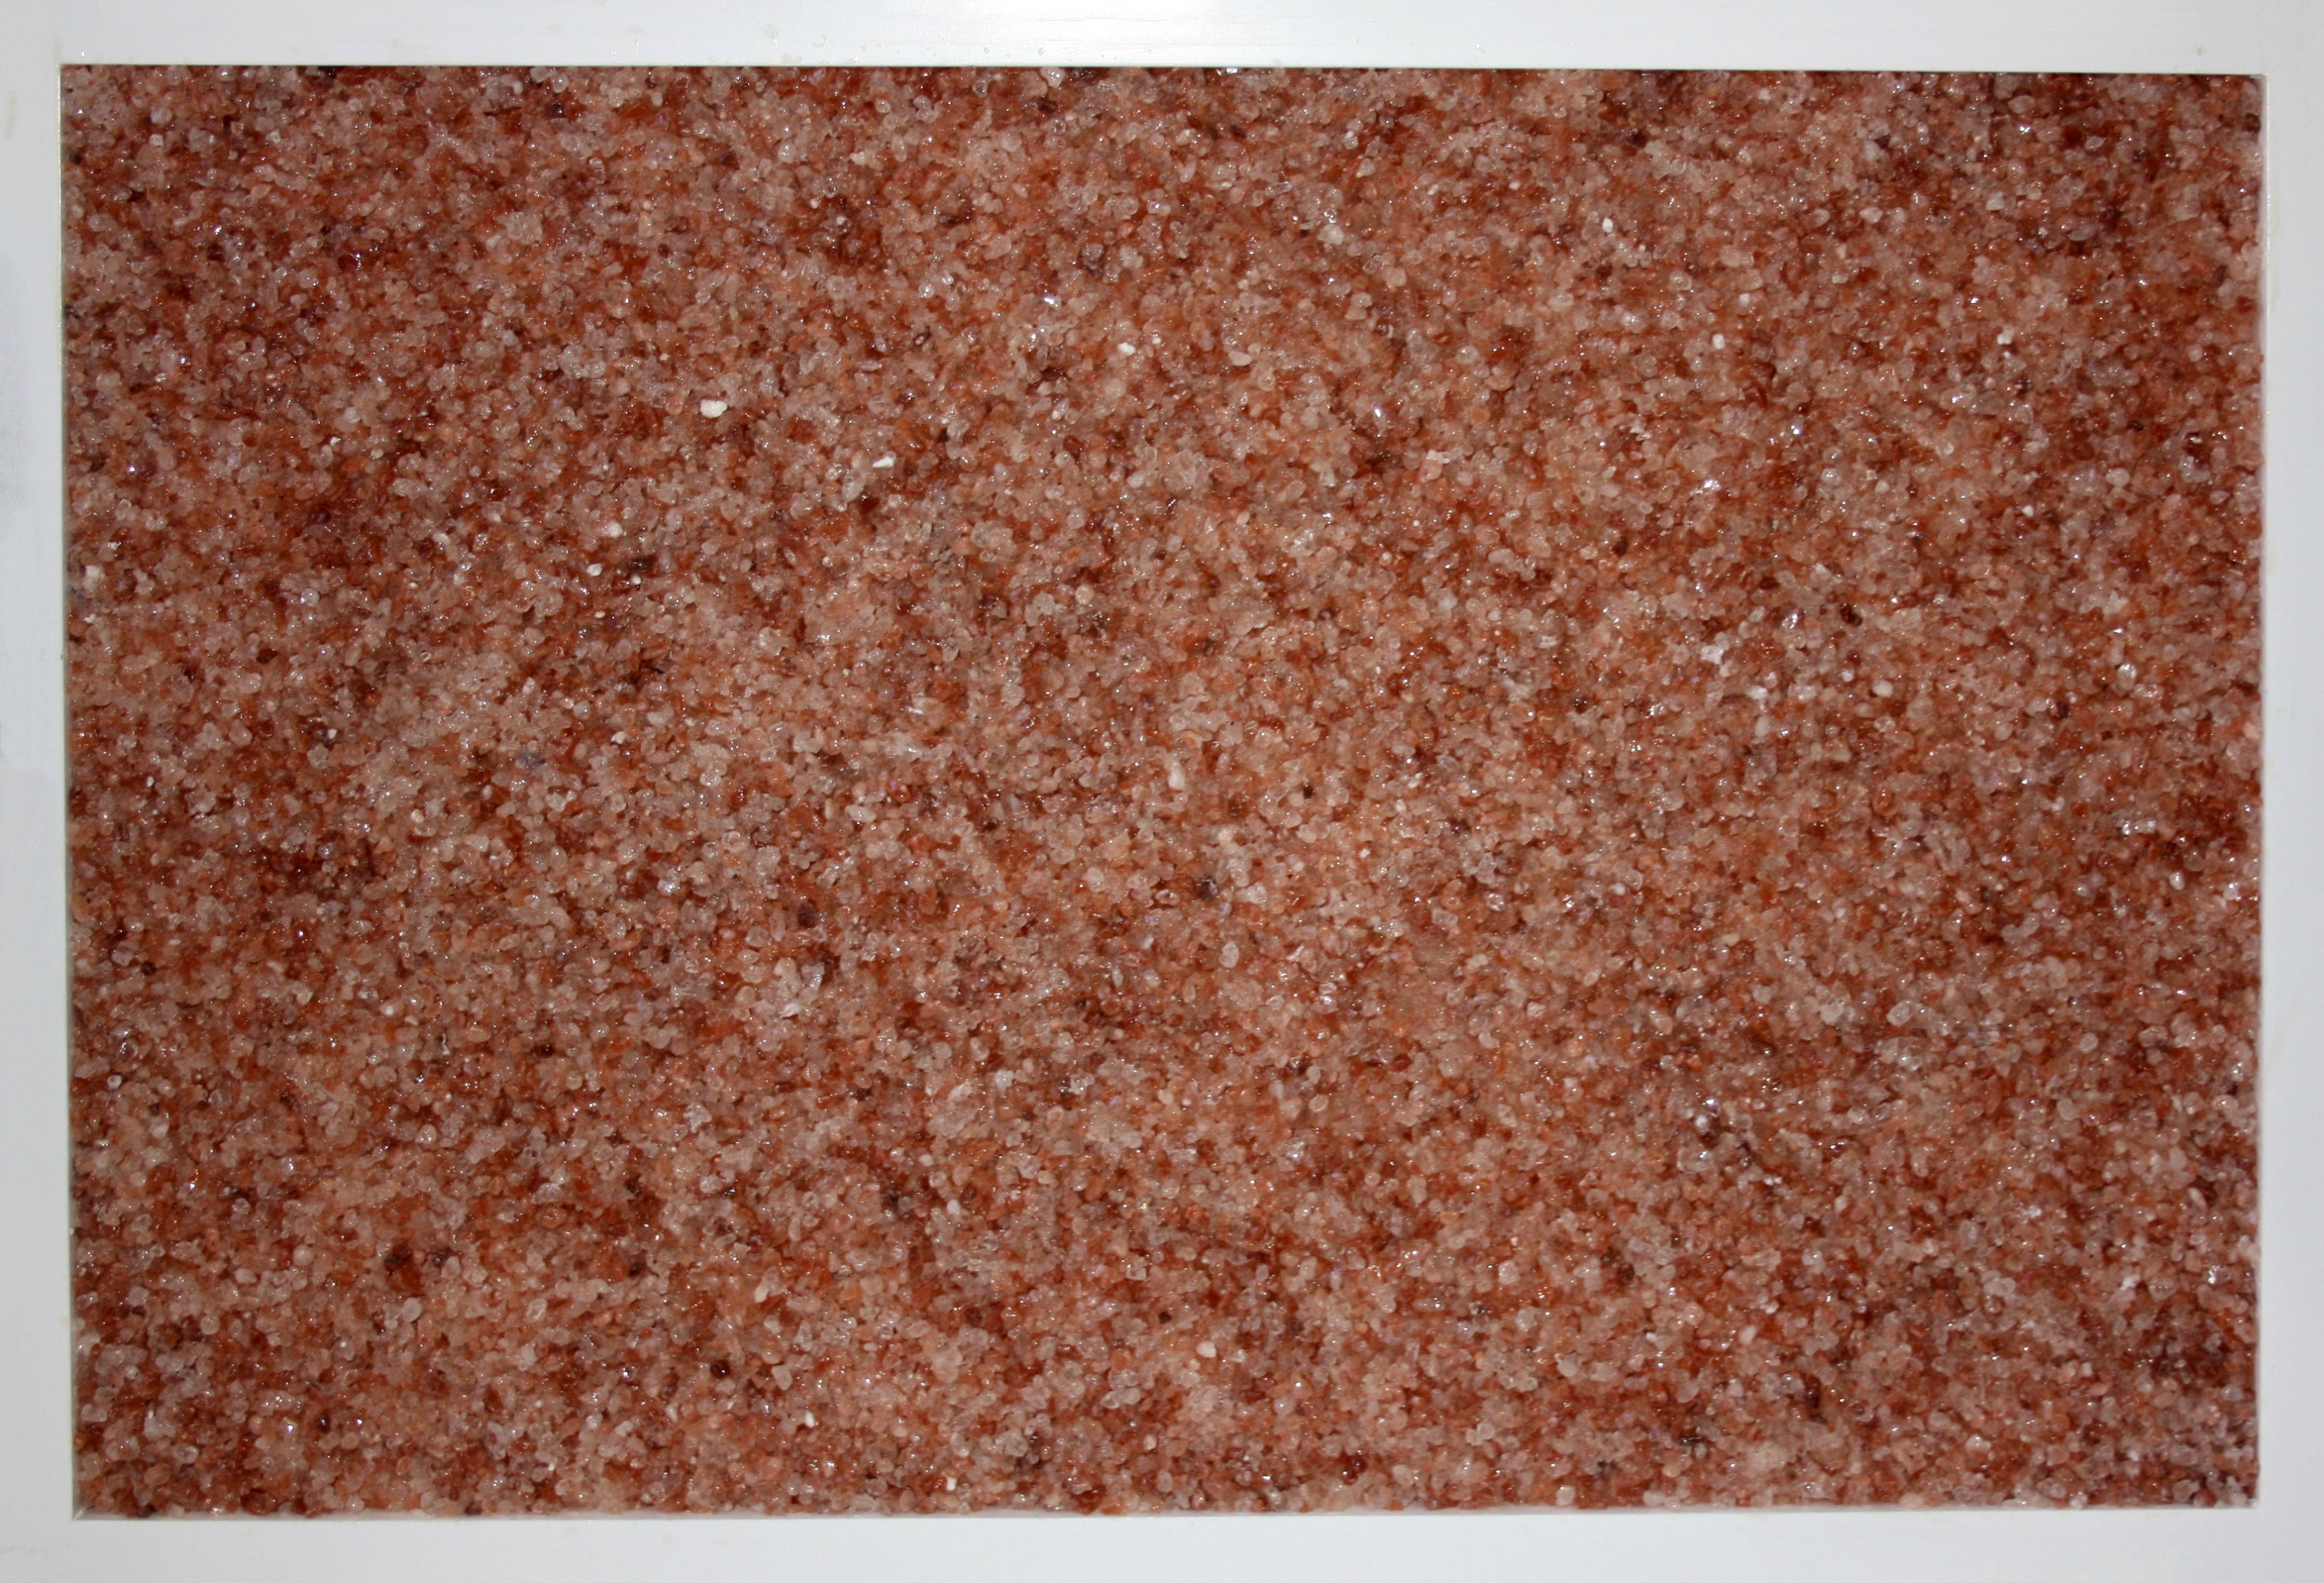 Pink granular Himalayan salt panel